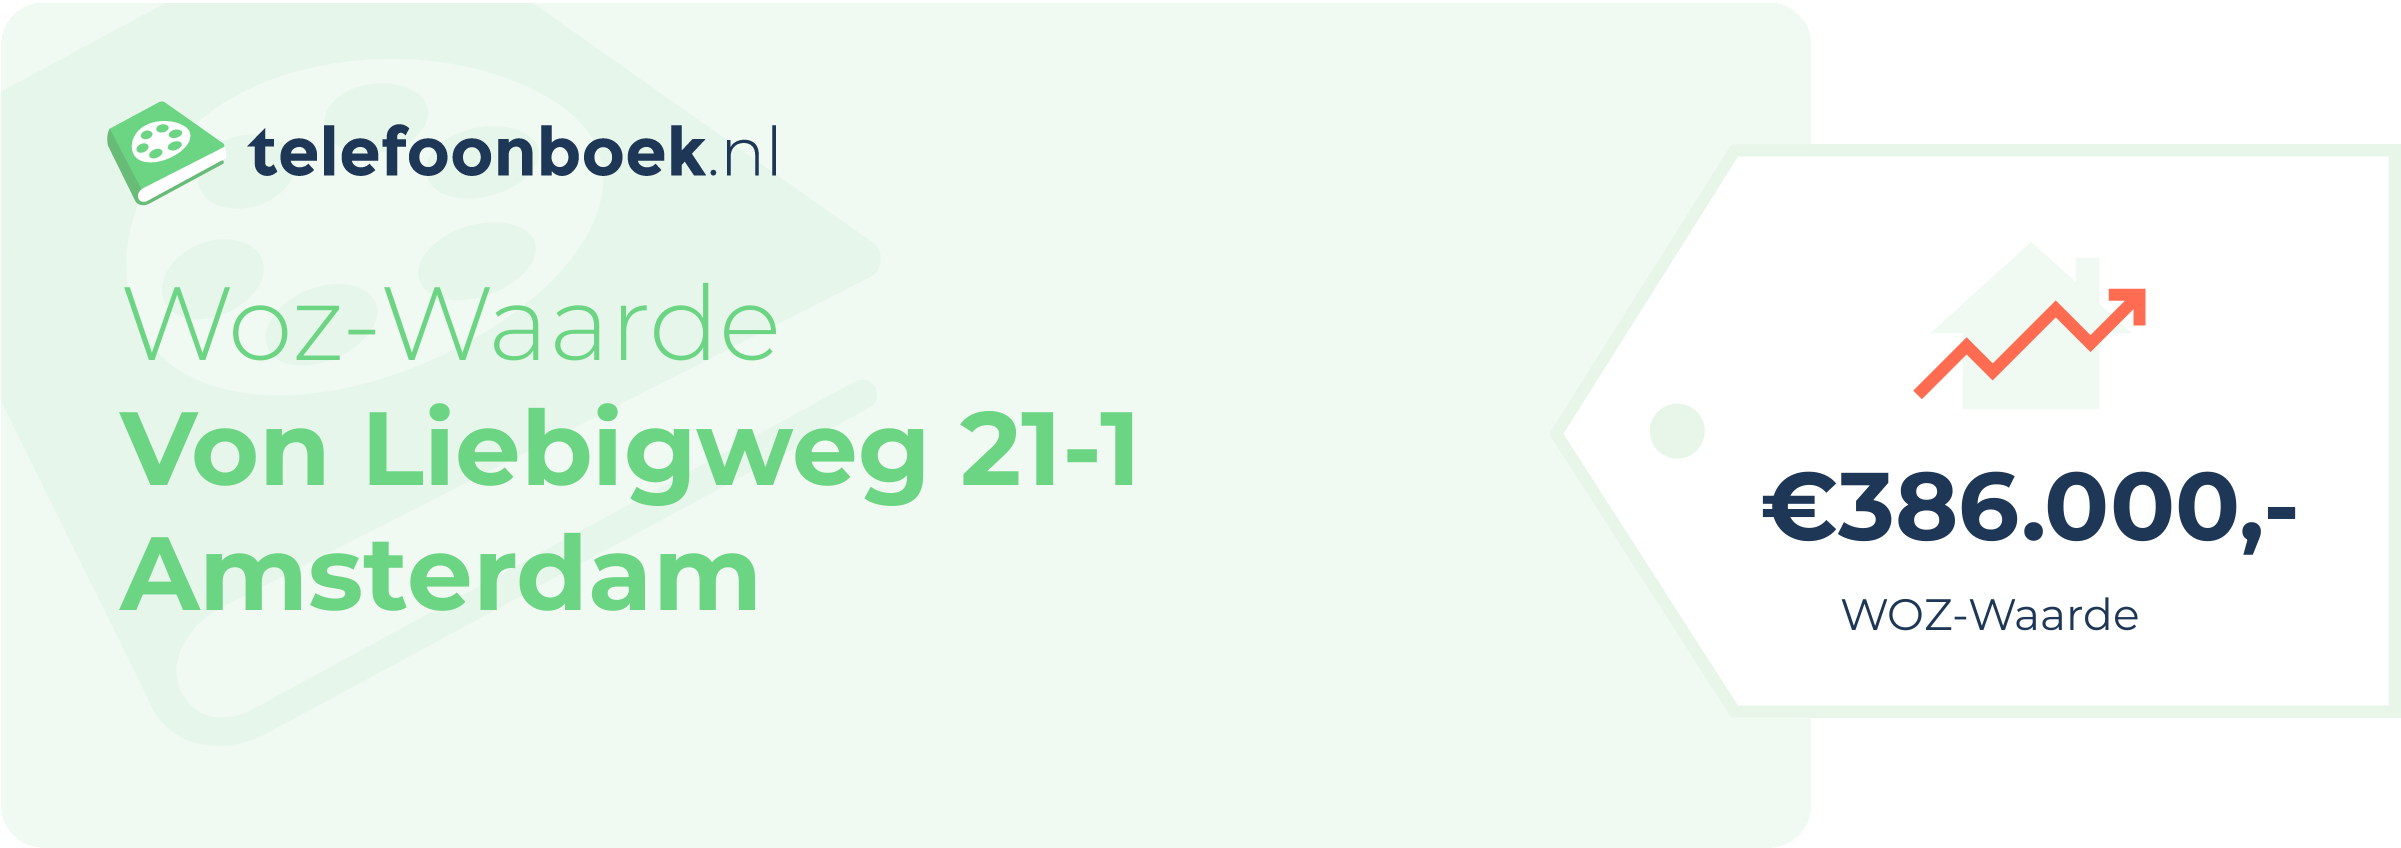 WOZ-waarde Von Liebigweg 21-1 Amsterdam